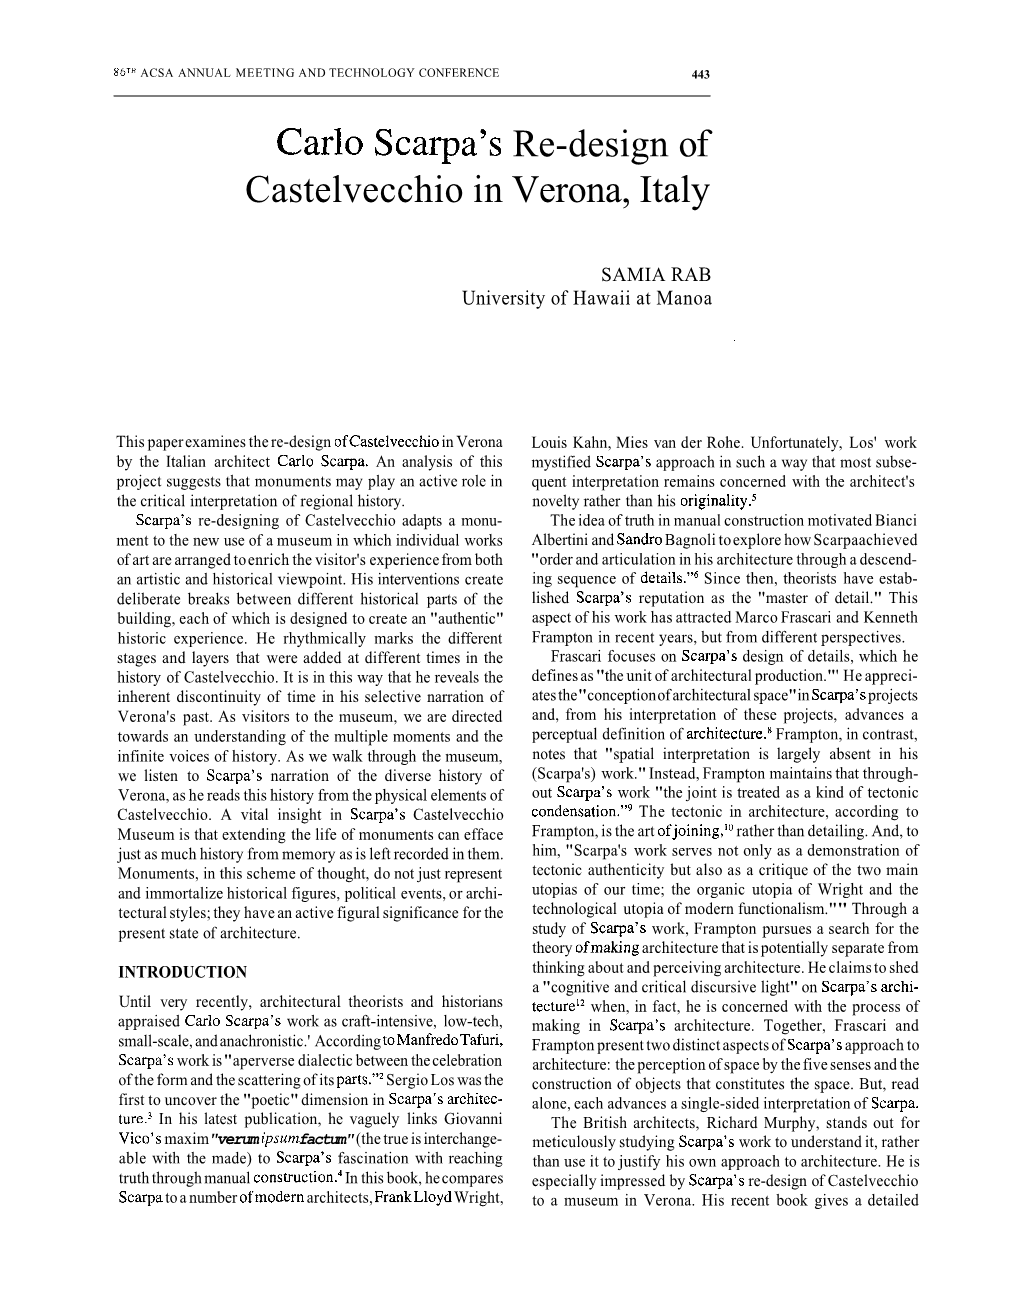 Carlo Scarpa's Re-Design of Castelvecchio in Verona, Italy